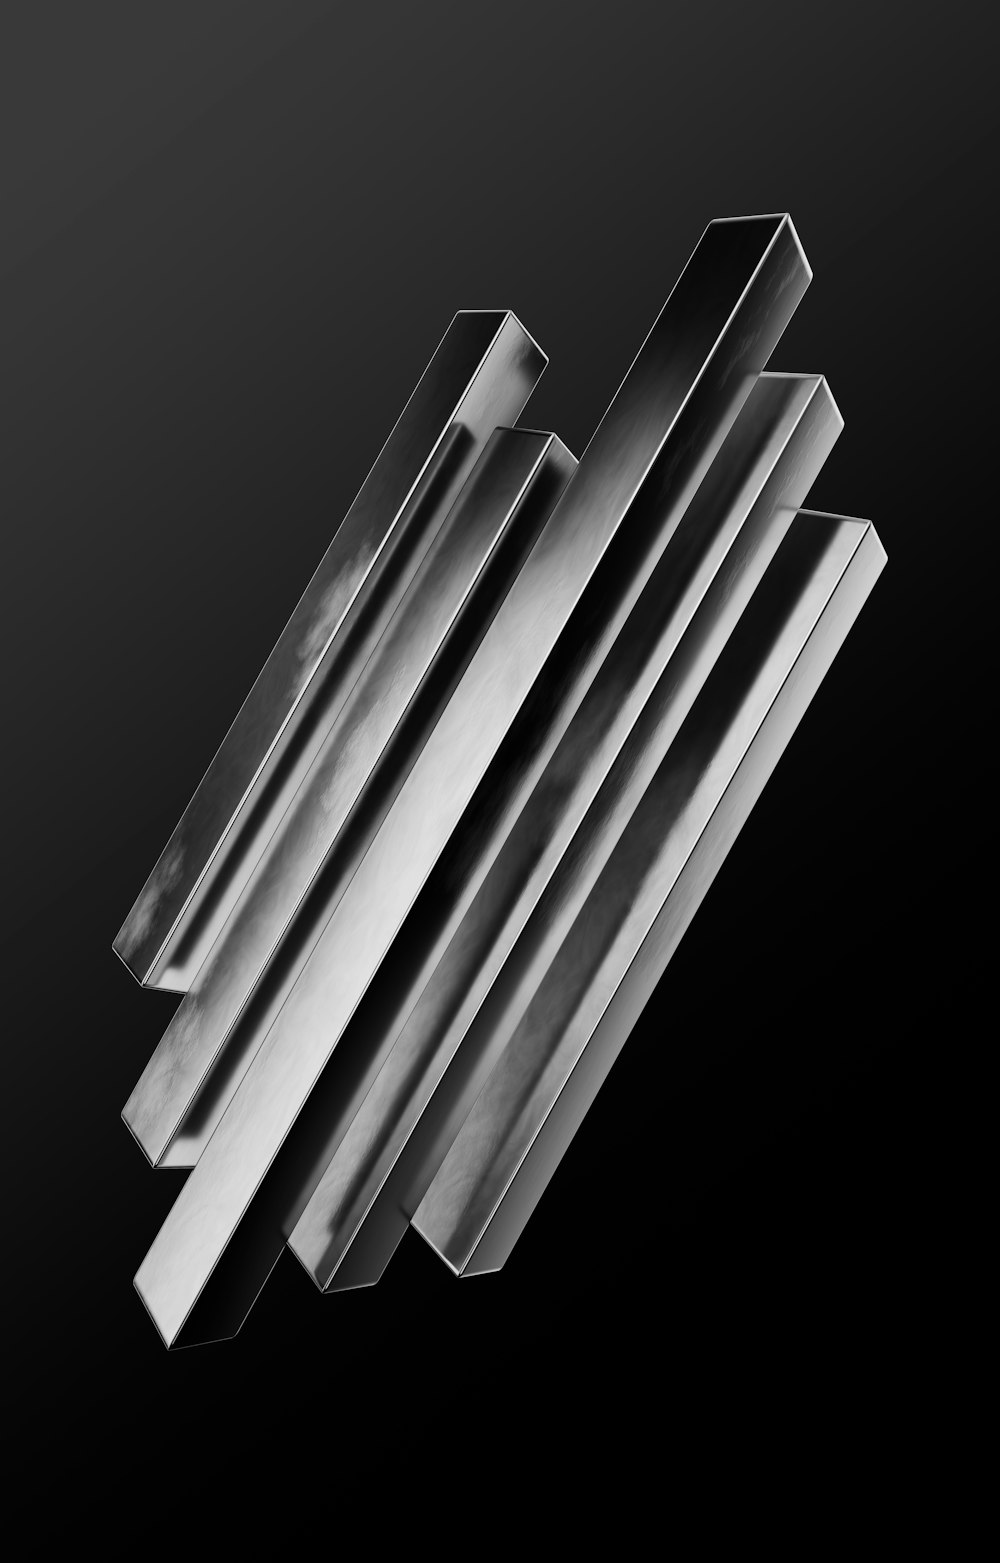 금속 막대의 흑백 사진